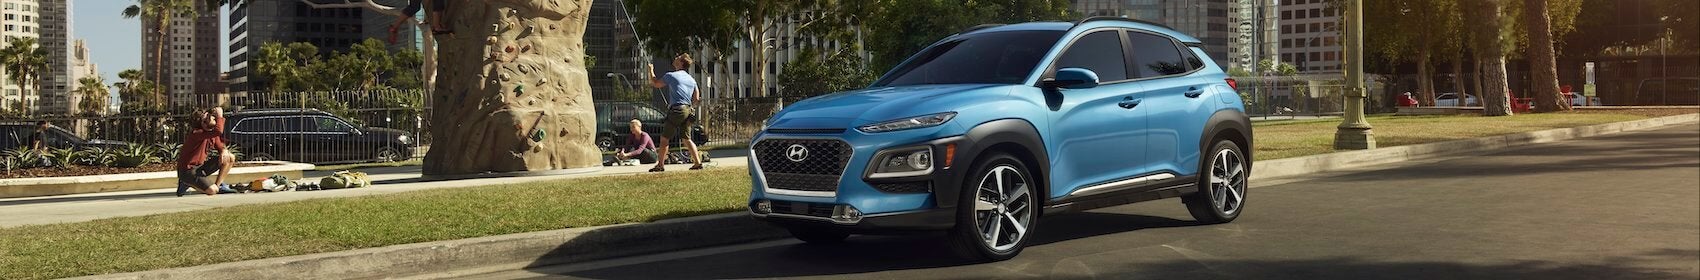 2021 Hyundai Kona Electric Review